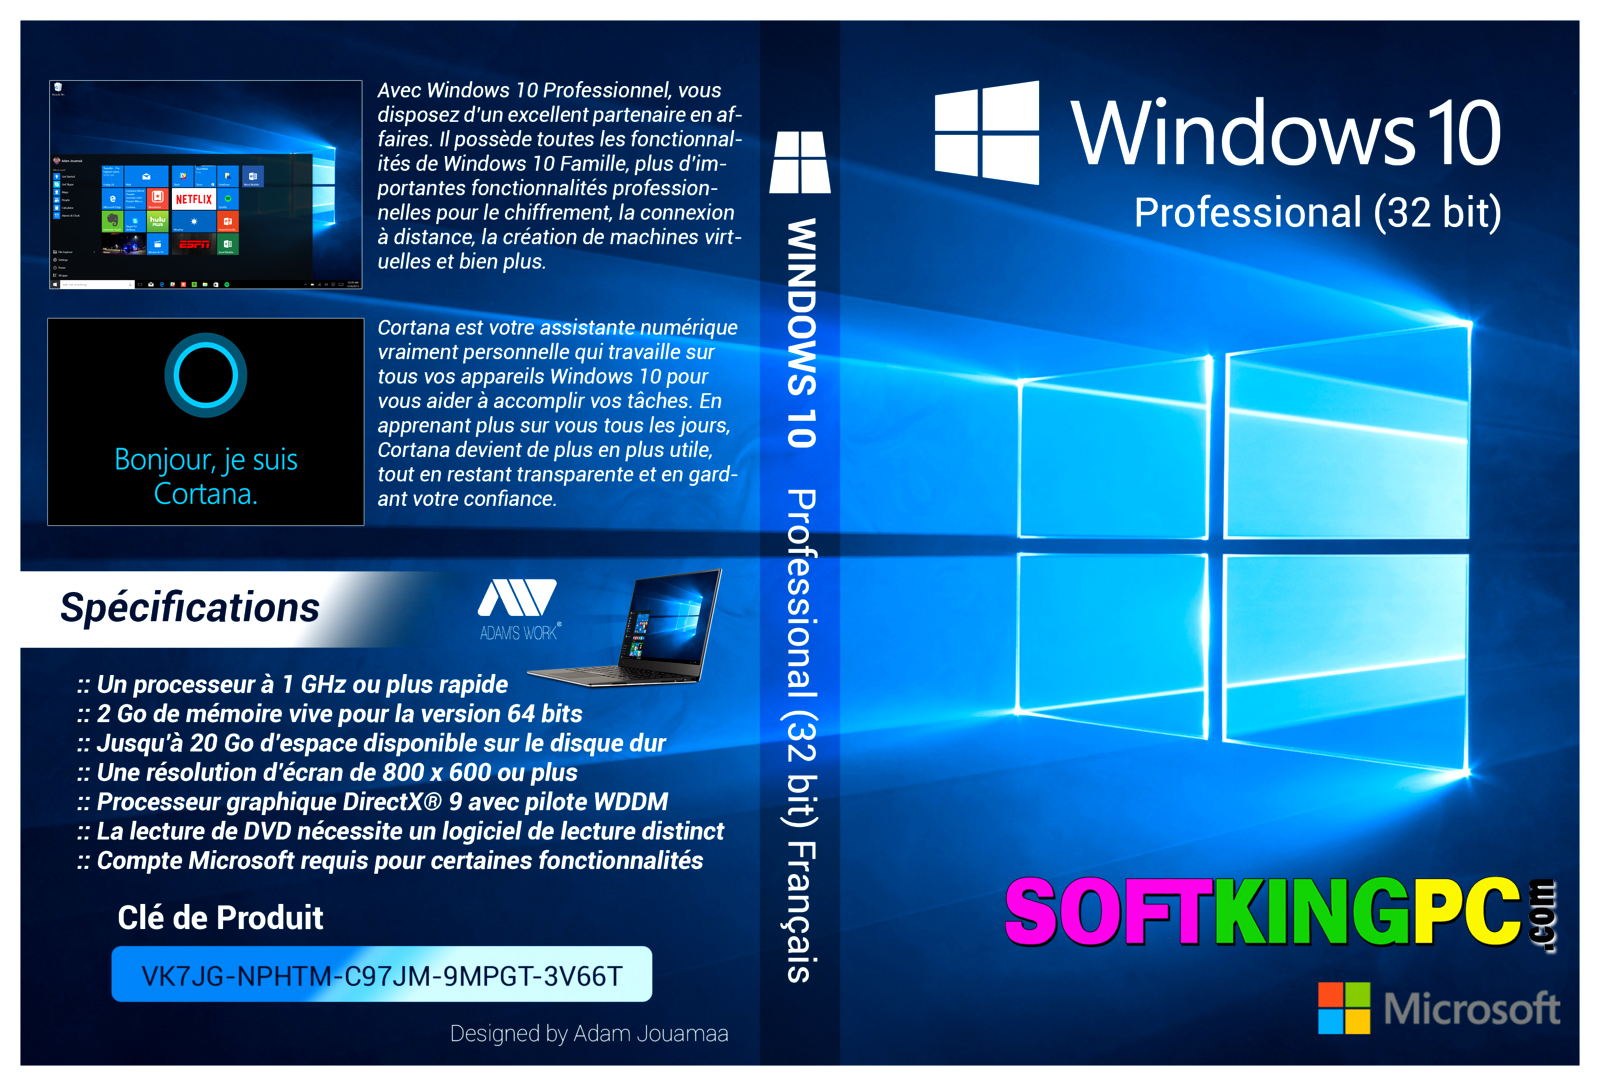 32 bit windows 10 softwares free download